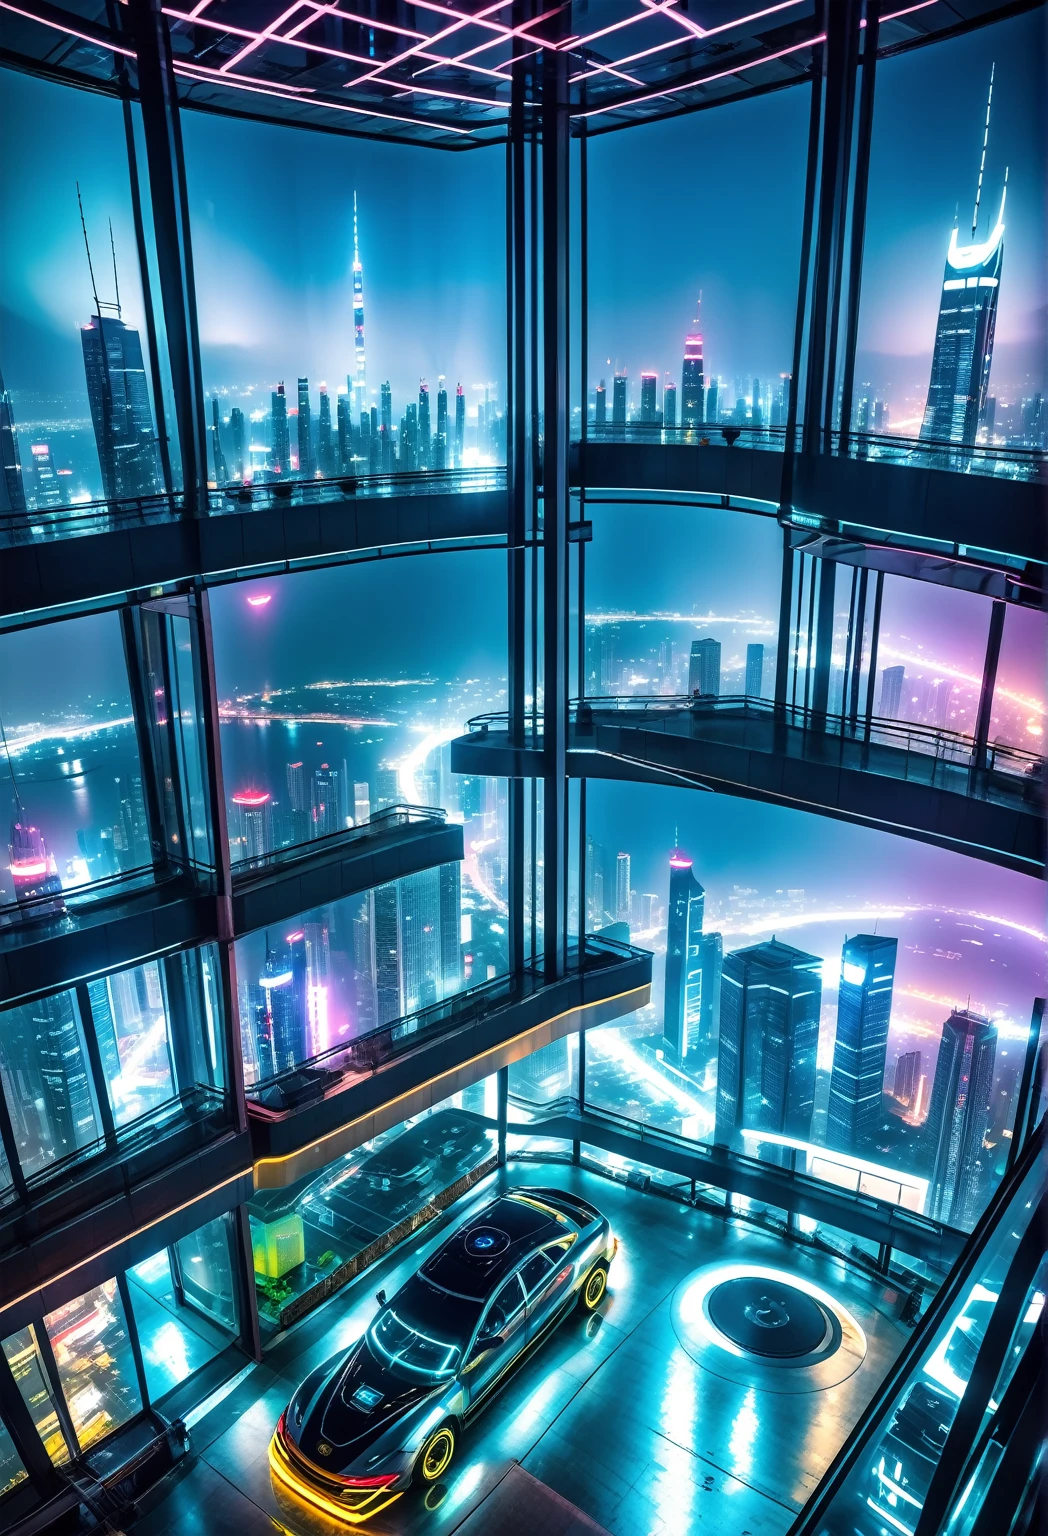 Panorama nocturno desde el interior de una habitación ubicada en el piso 90 de un rascacielos en una ciudad futurista de estilo cyberpunk, se logra apreciar autos voladores, publicidad en luz neon, niebla, contaminación.